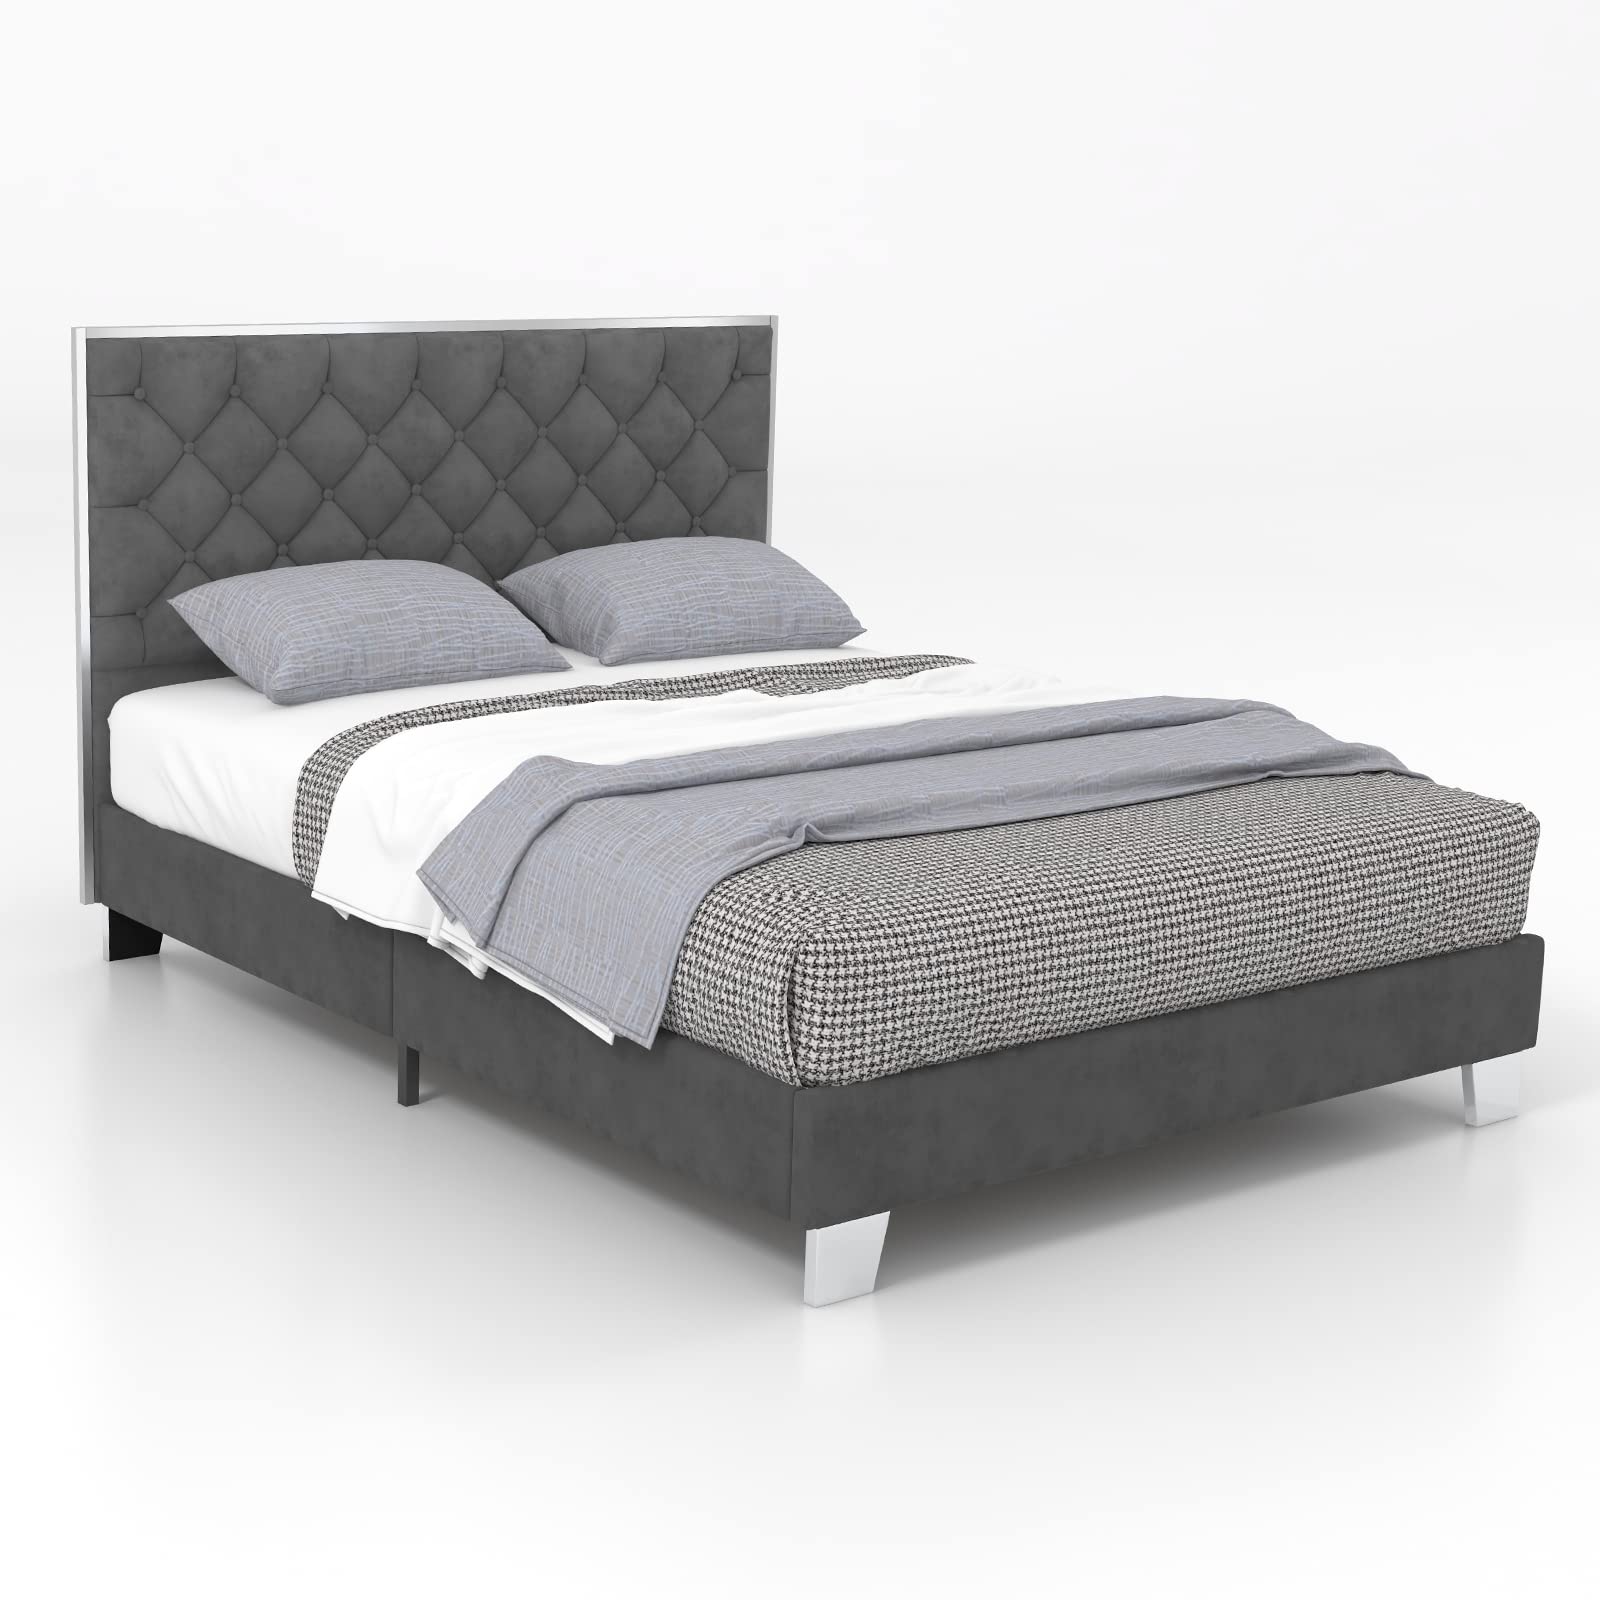 Giantex Upholstered Bed Frame, Modern Platform Bed